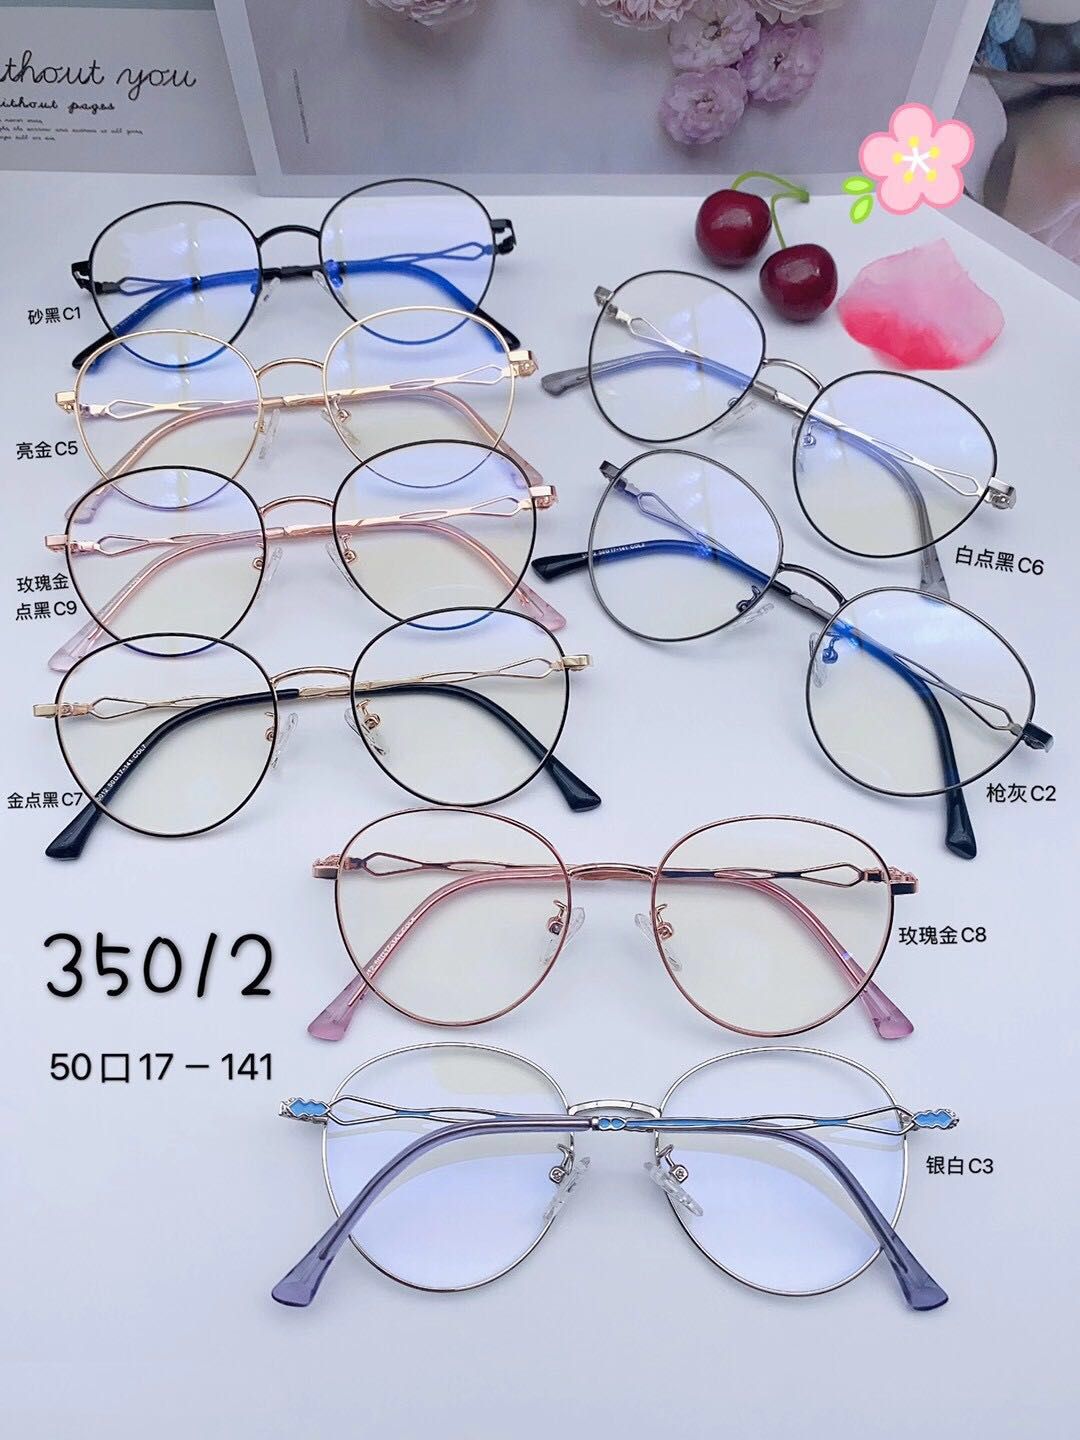 蓝光眼镜35012图